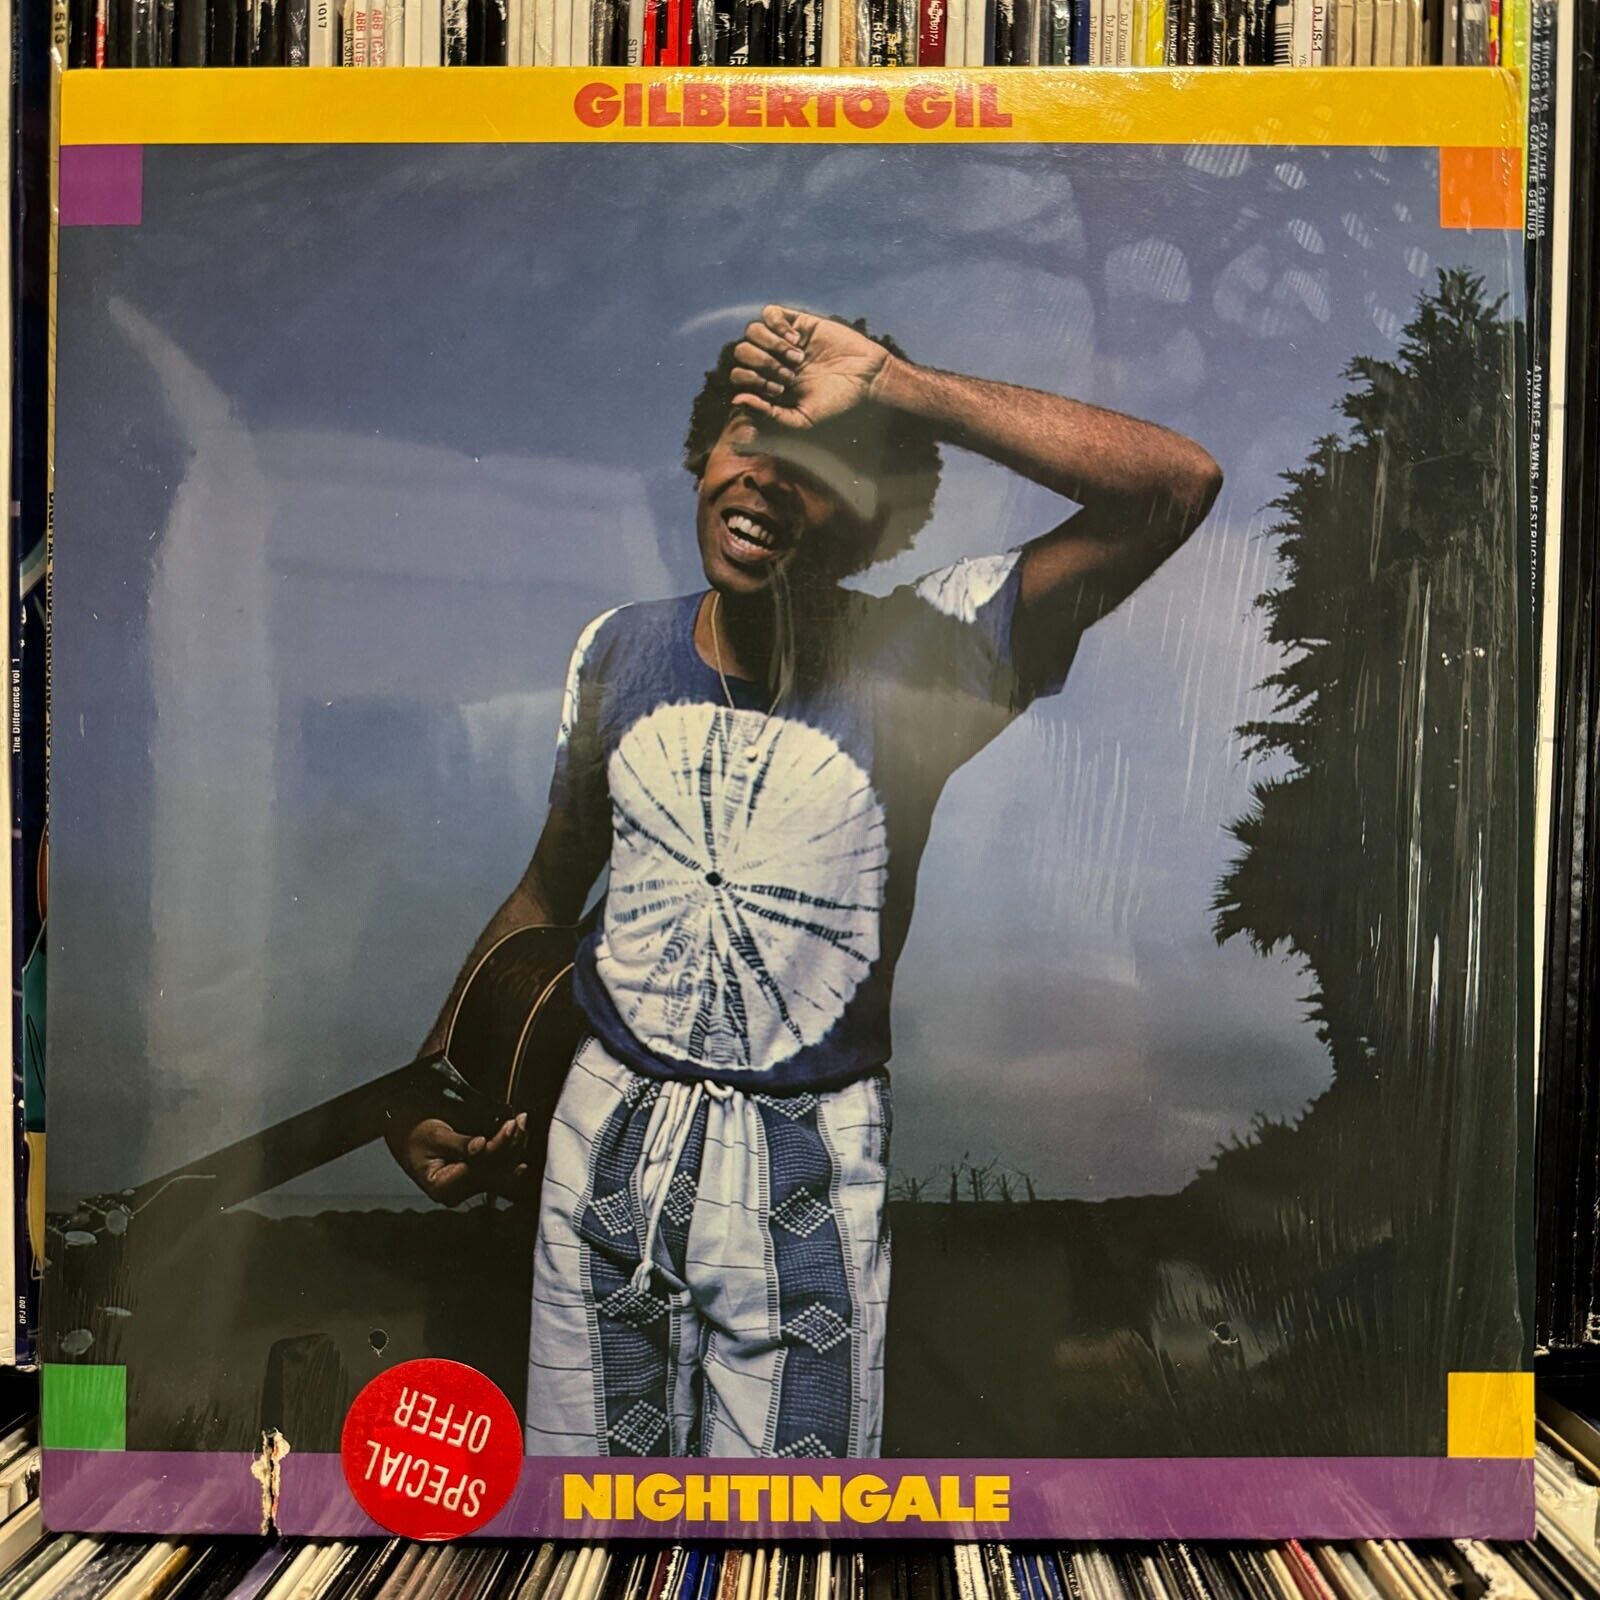 GILBERTO GIL - NIGHTINGALE (VINYL LP)  1979!!  RARE!!  ELEKTRA / ASYLUM / 6E-167